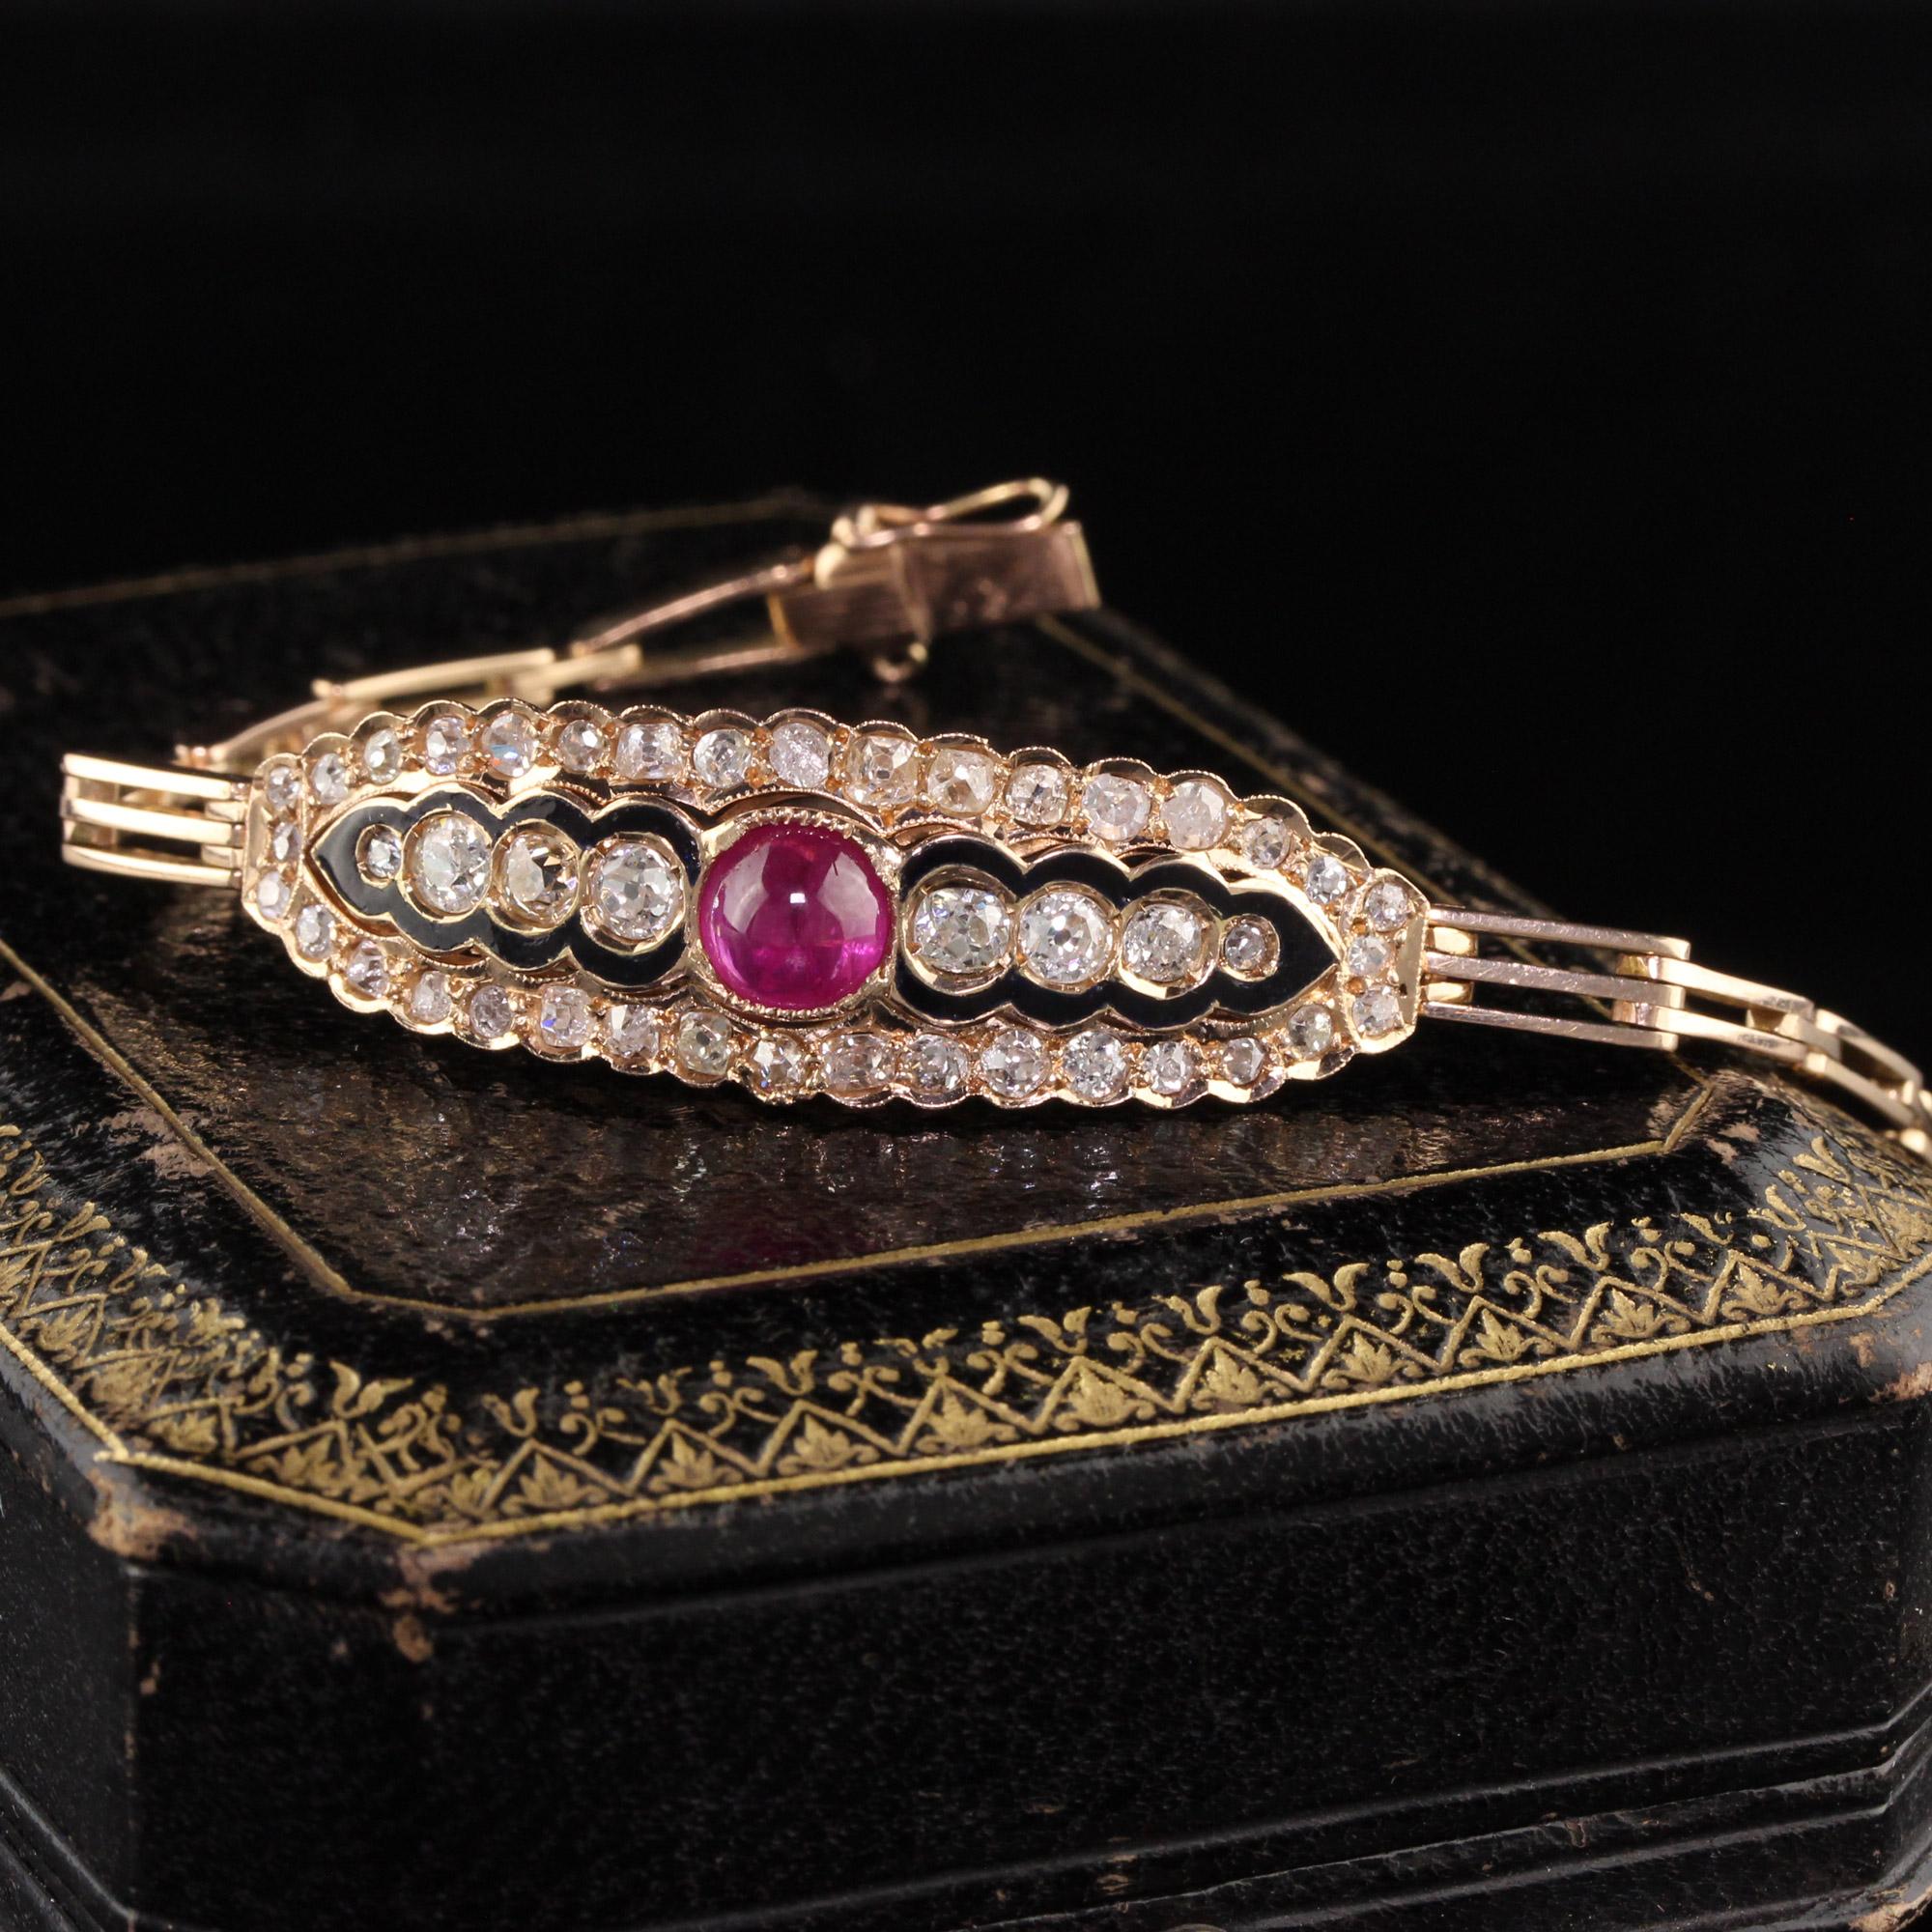 Magnifique bracelet victorien ancien en or rose 14K avec diamants et rubis cabochon. Ce magnifique bracelet est fabriqué en or rose 14 carats. Le bracelet est orné de diamants taille ancienne et d'un rubis naturel cabochon serti dans une magnifique